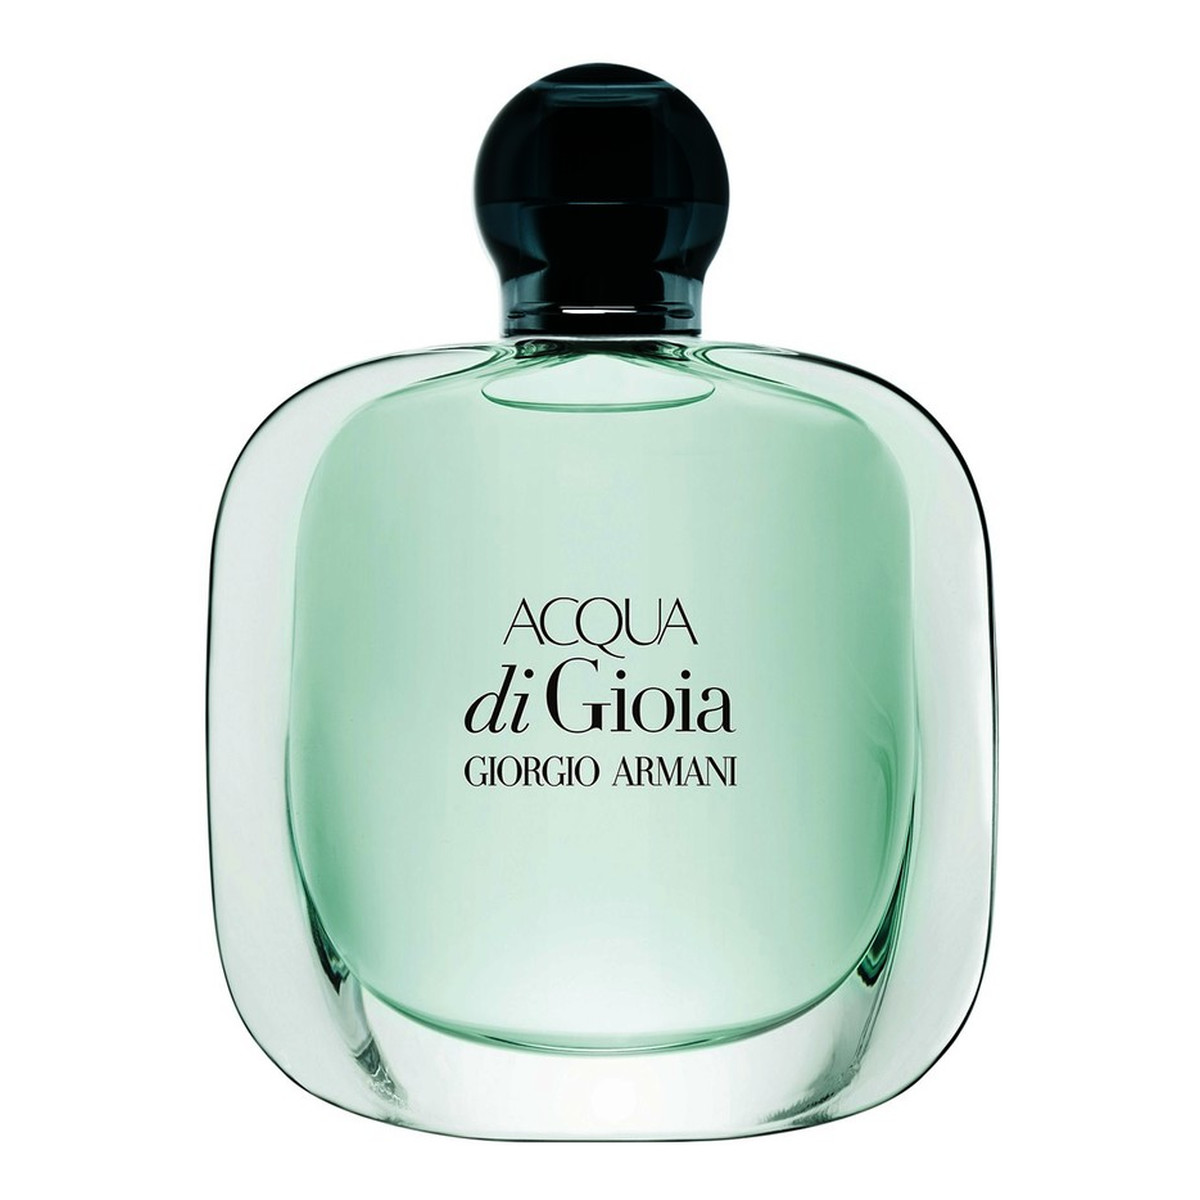 Giorgio Armani Acqua di Gioia zestaw (woda perfumowana 50ml + balsam do ciała 75ml + żel pod prysznic 75ml)